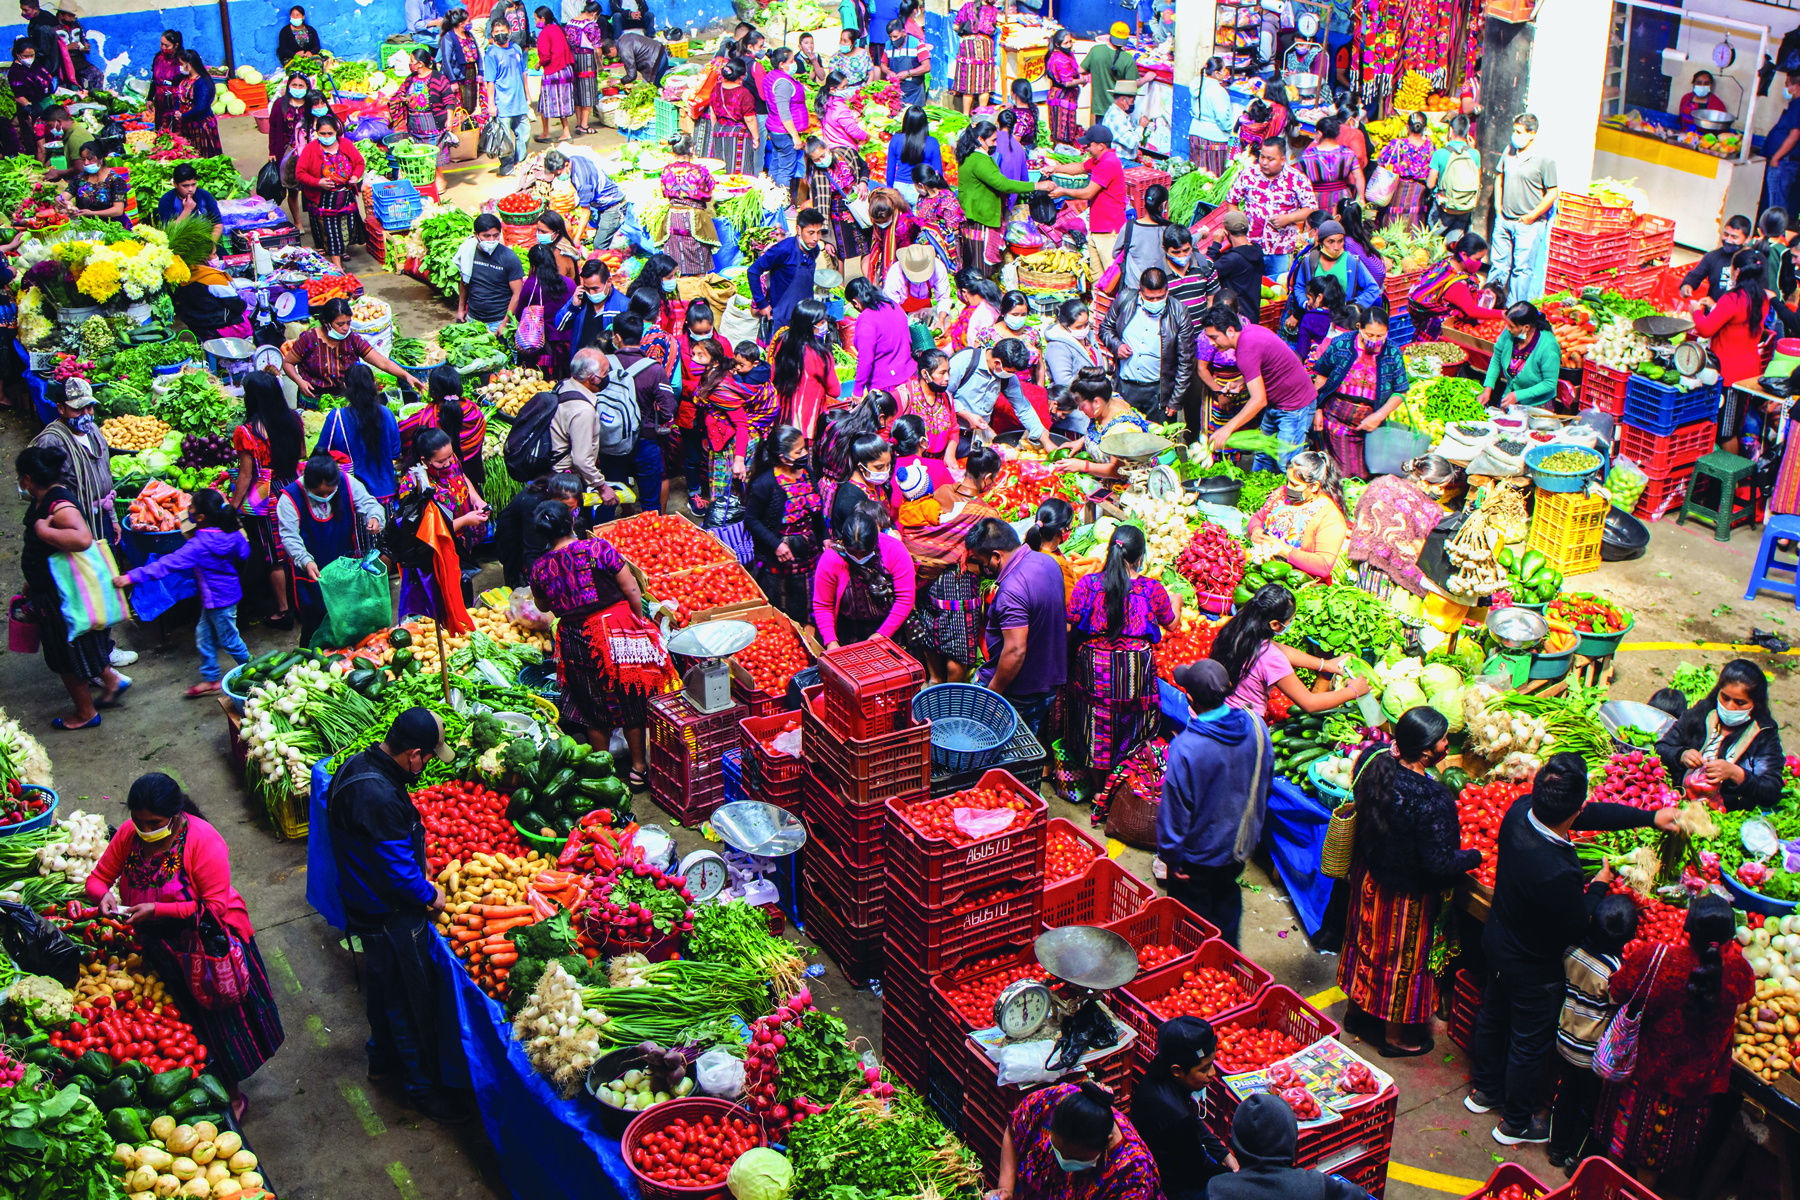 Fotografia. Pessoas aglomeradas em uma ampla área interna, escolhem legumes e verduras que estão expostos em grandes bancas ou agrupados em caixas plásticas.